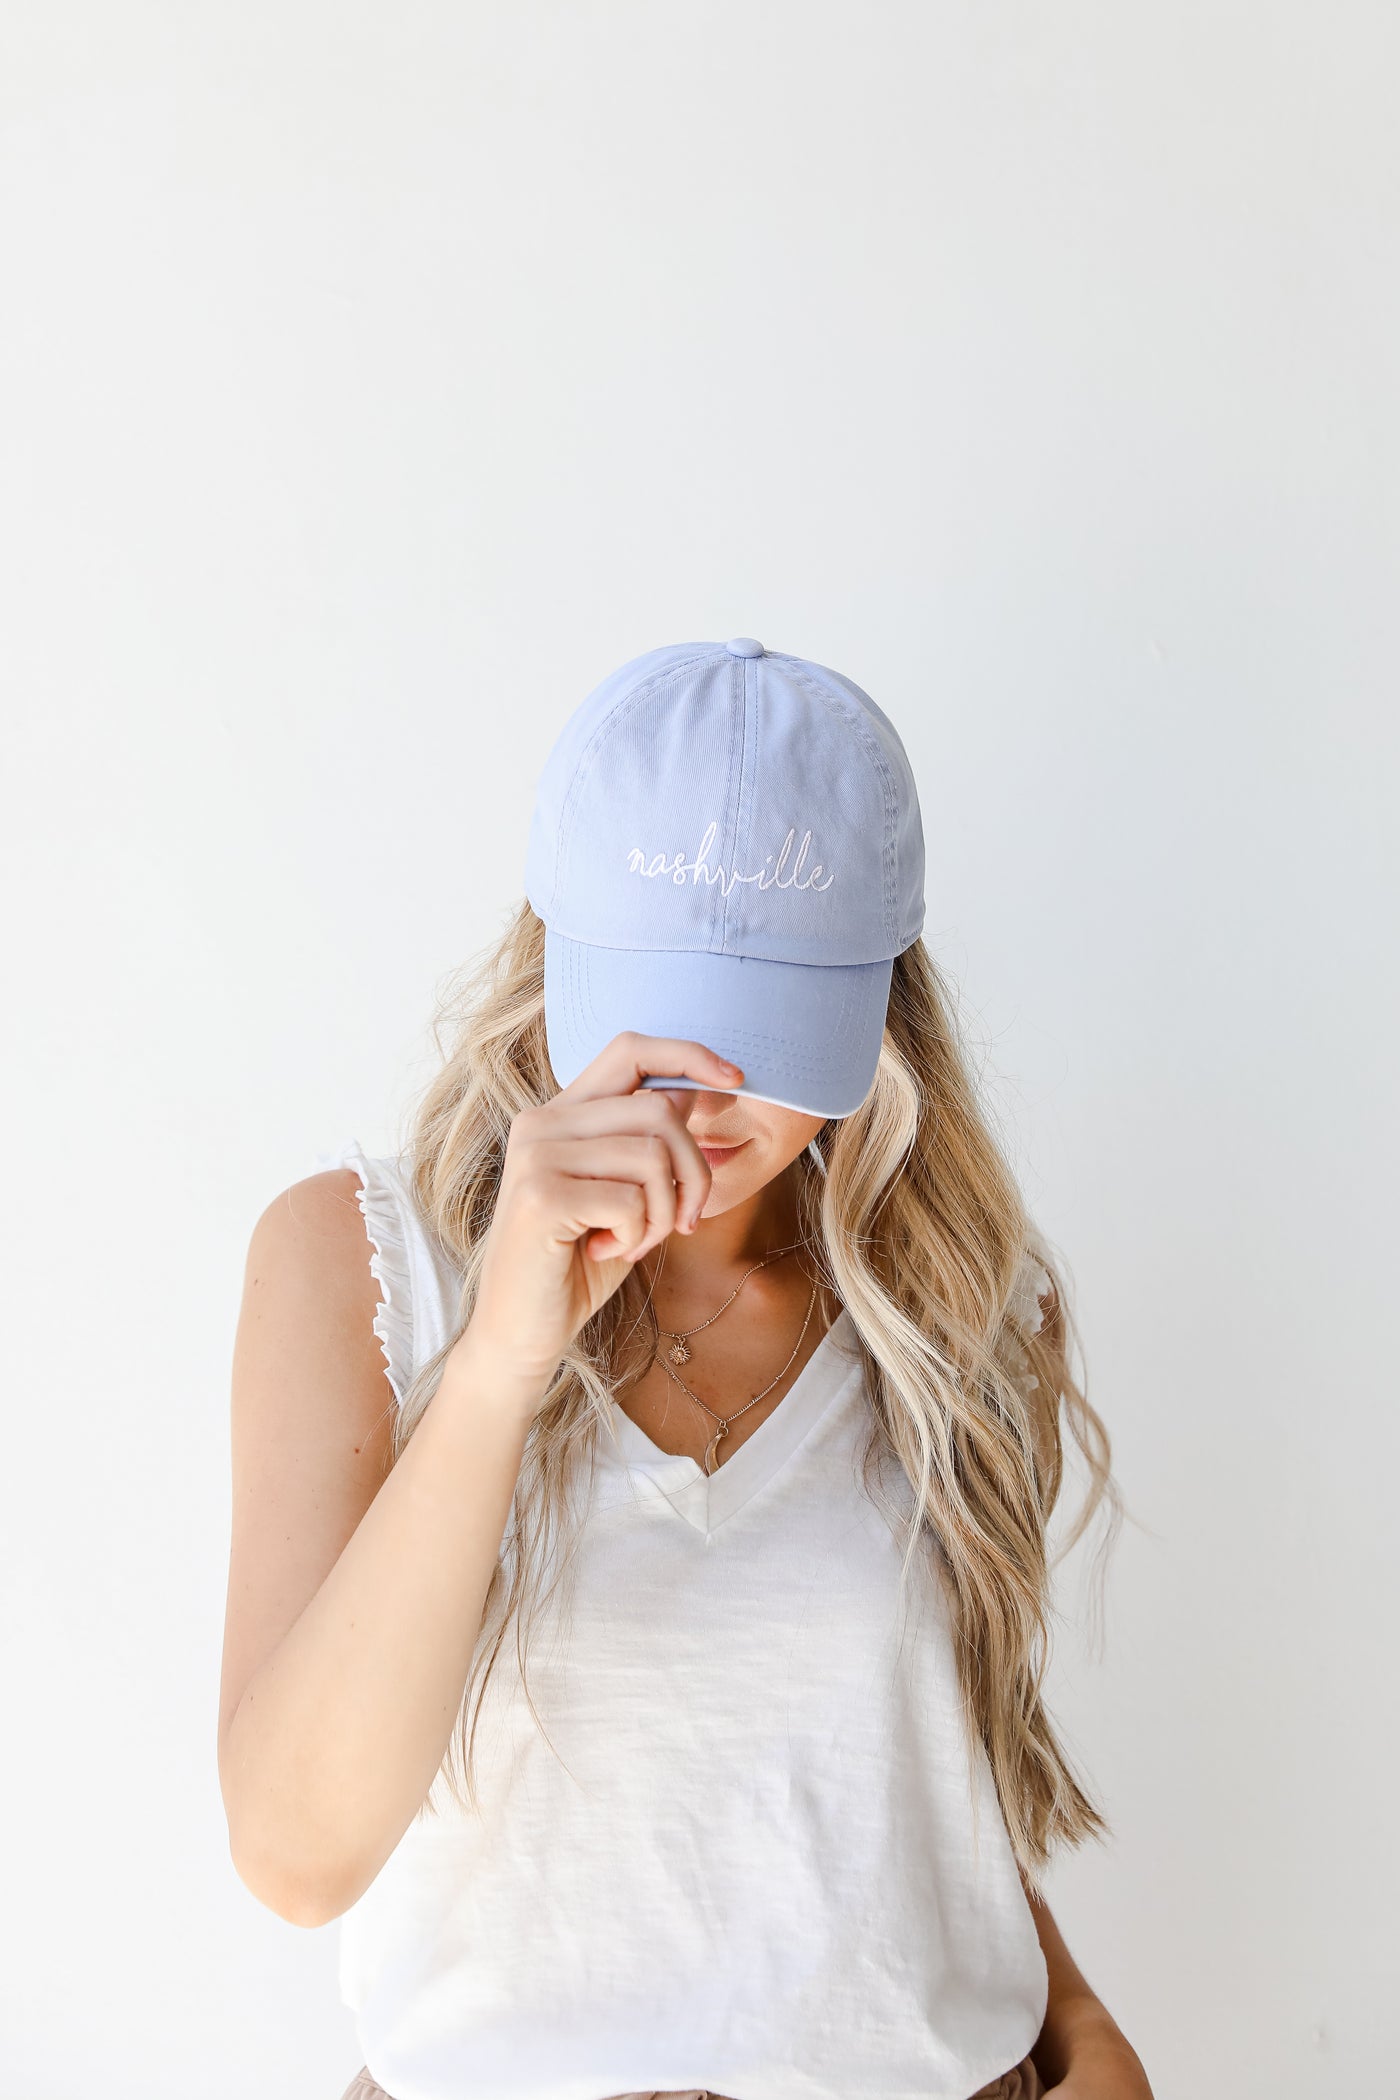 Nashville Embroidered Hat in light blue on model